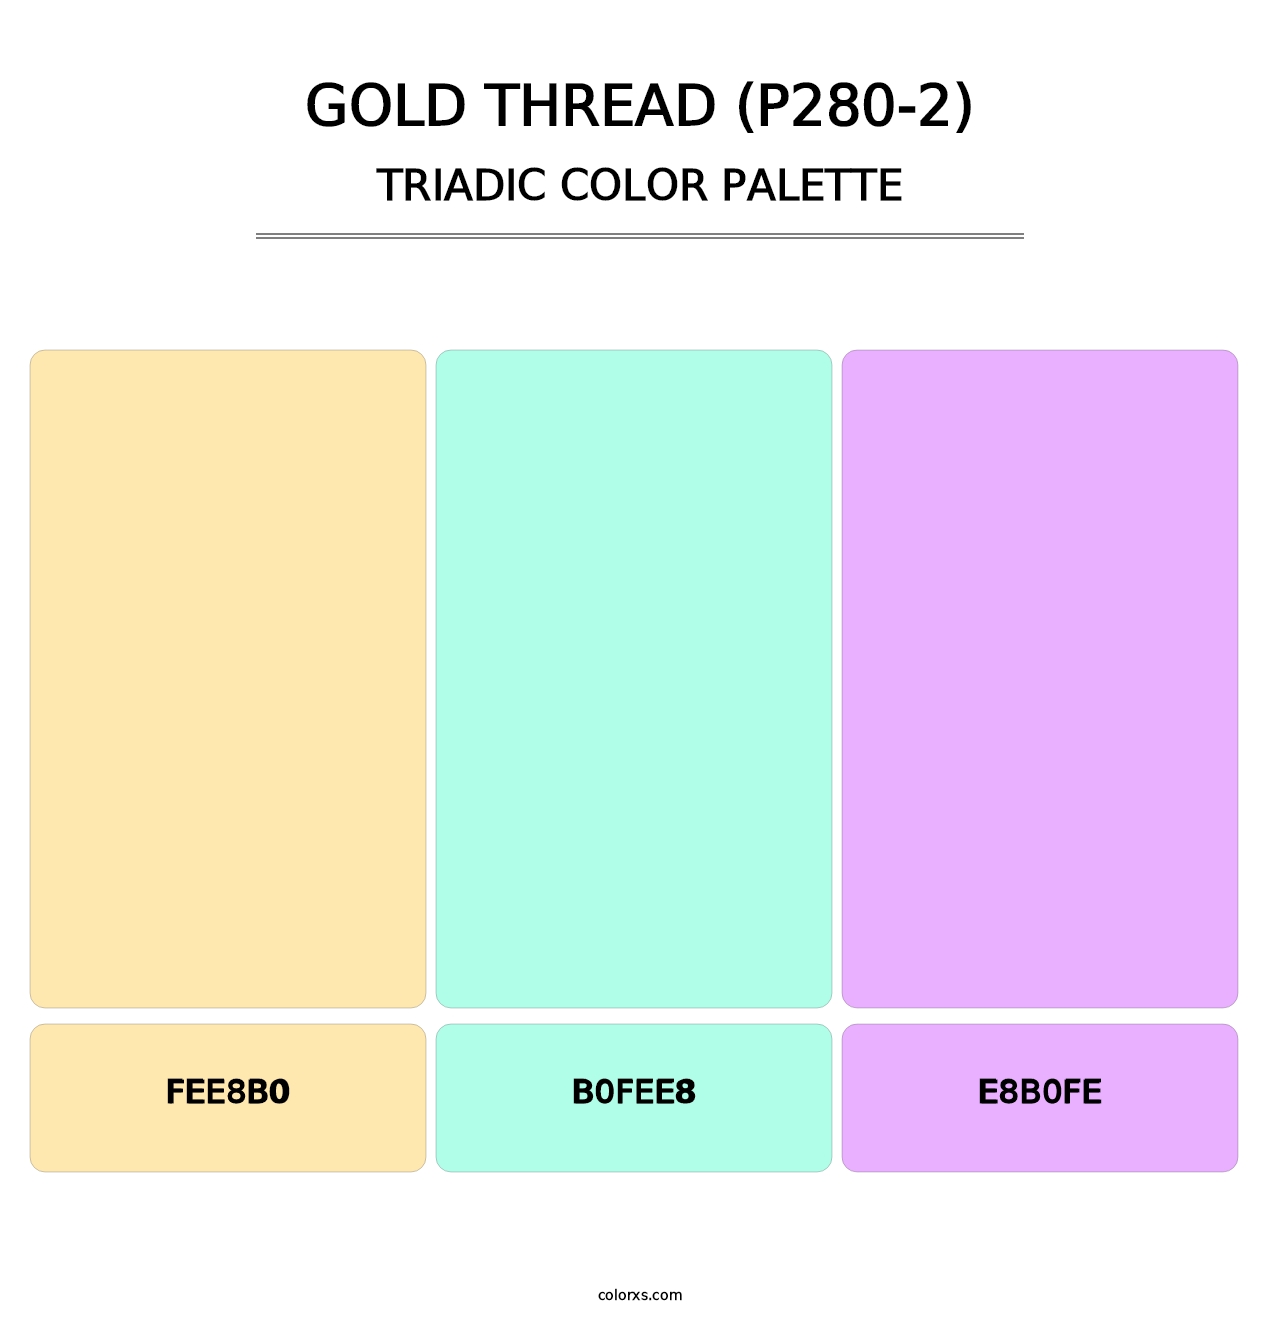 Gold Thread (P280-2) - Triadic Color Palette